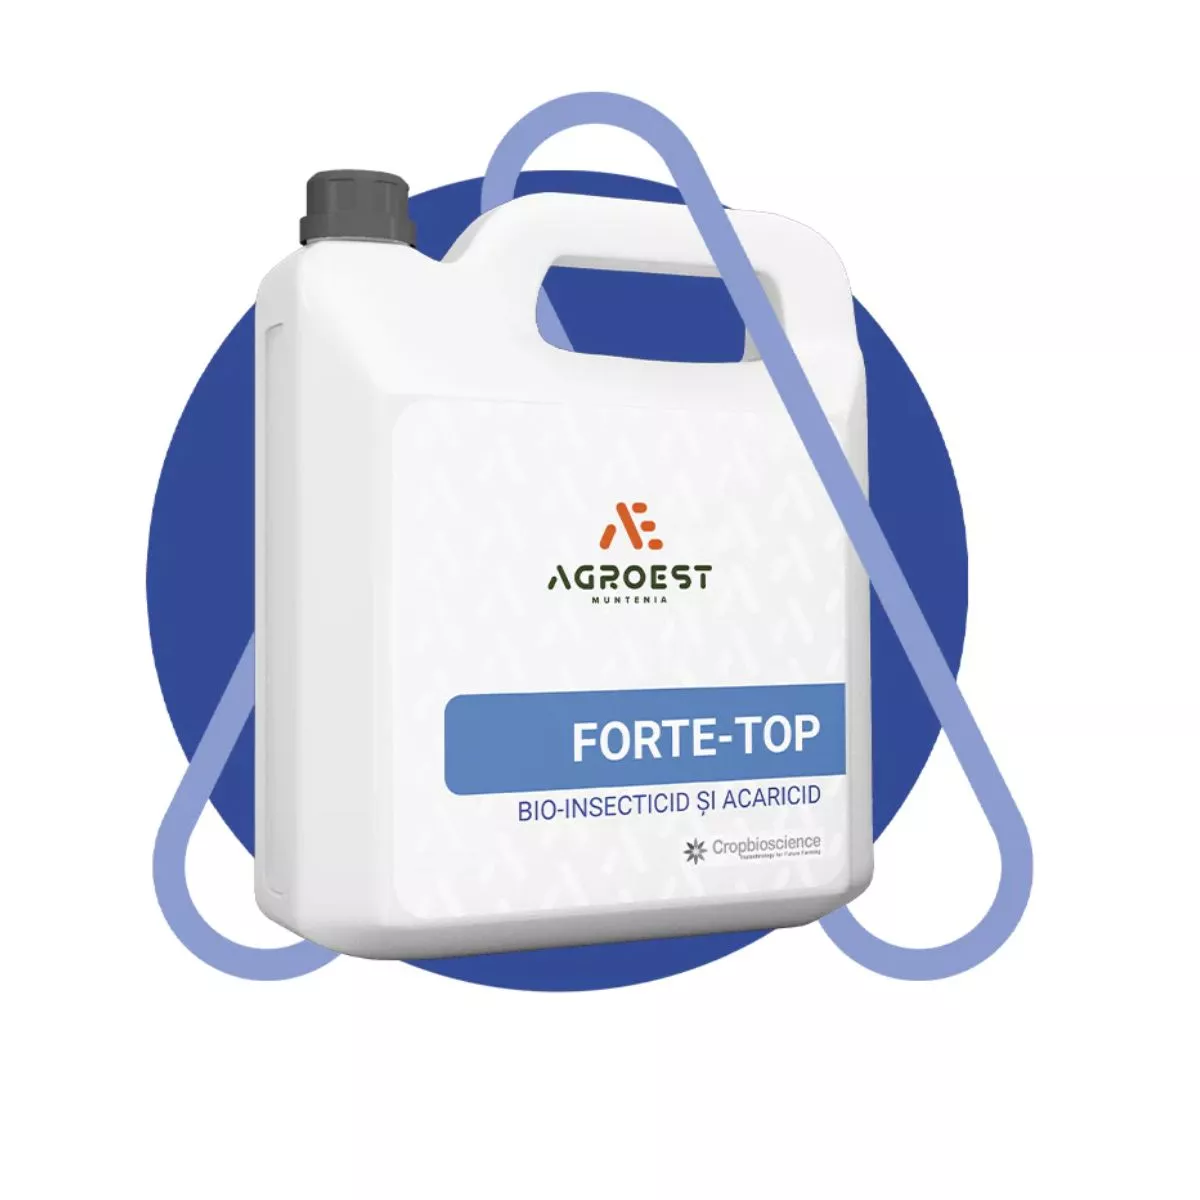 FORTE TOP, Bio-insecticid si acaricid organic, 1 litru 1